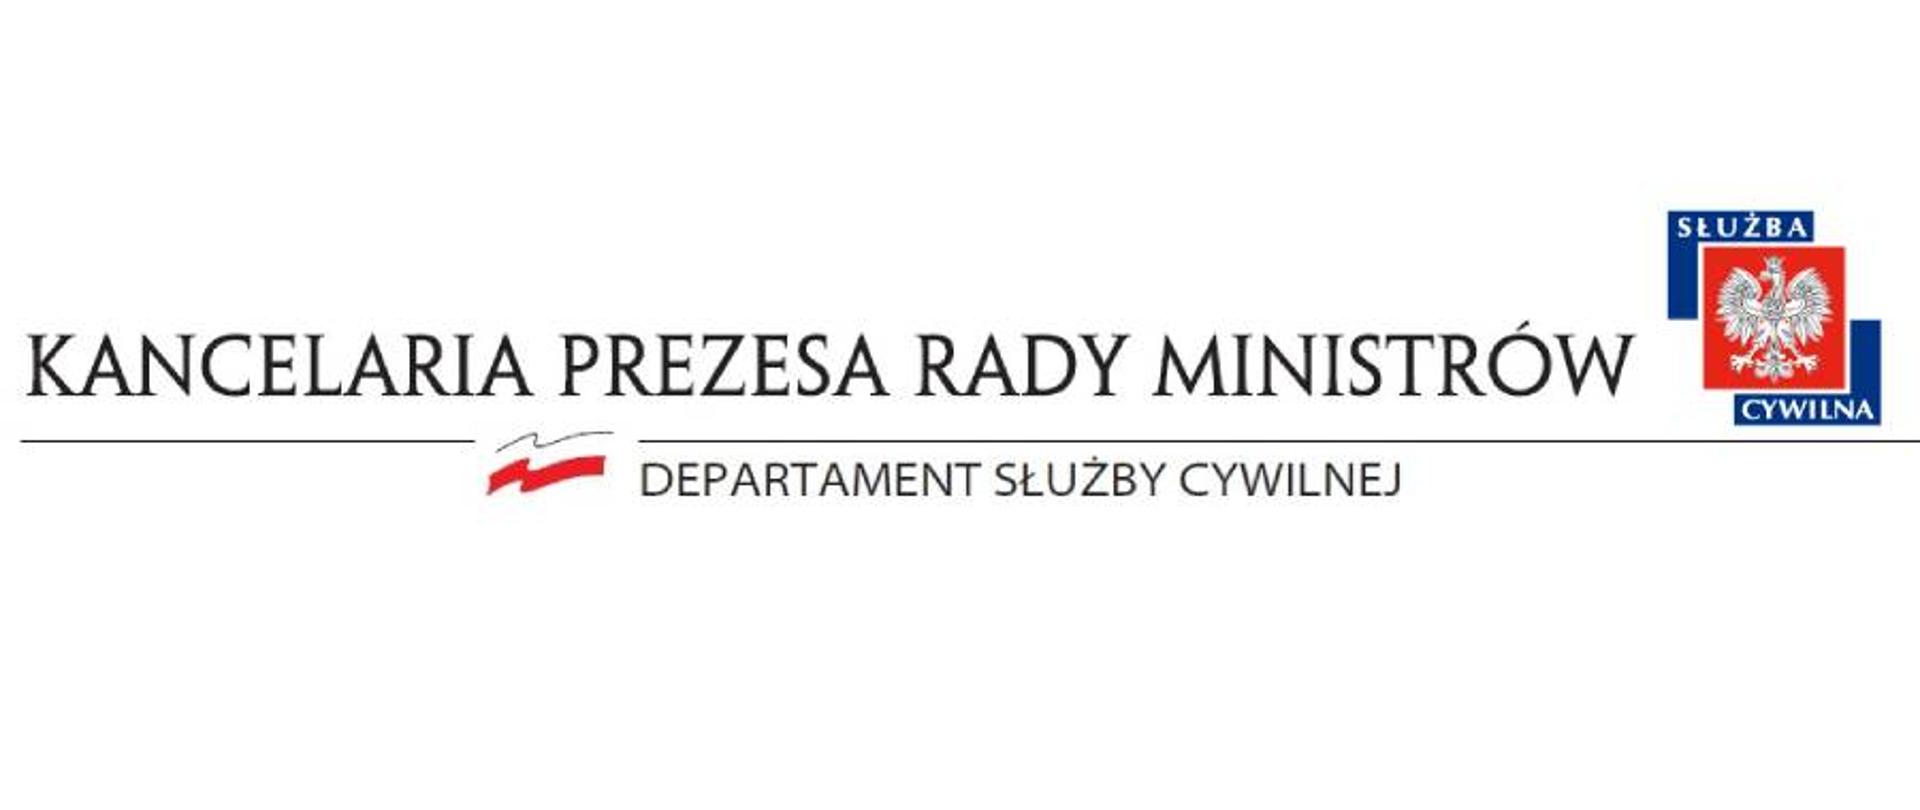 Napis: Kancelaria Prezesa Rady Ministrów, Departament Służby Cywilnej i logo służby cywilnej